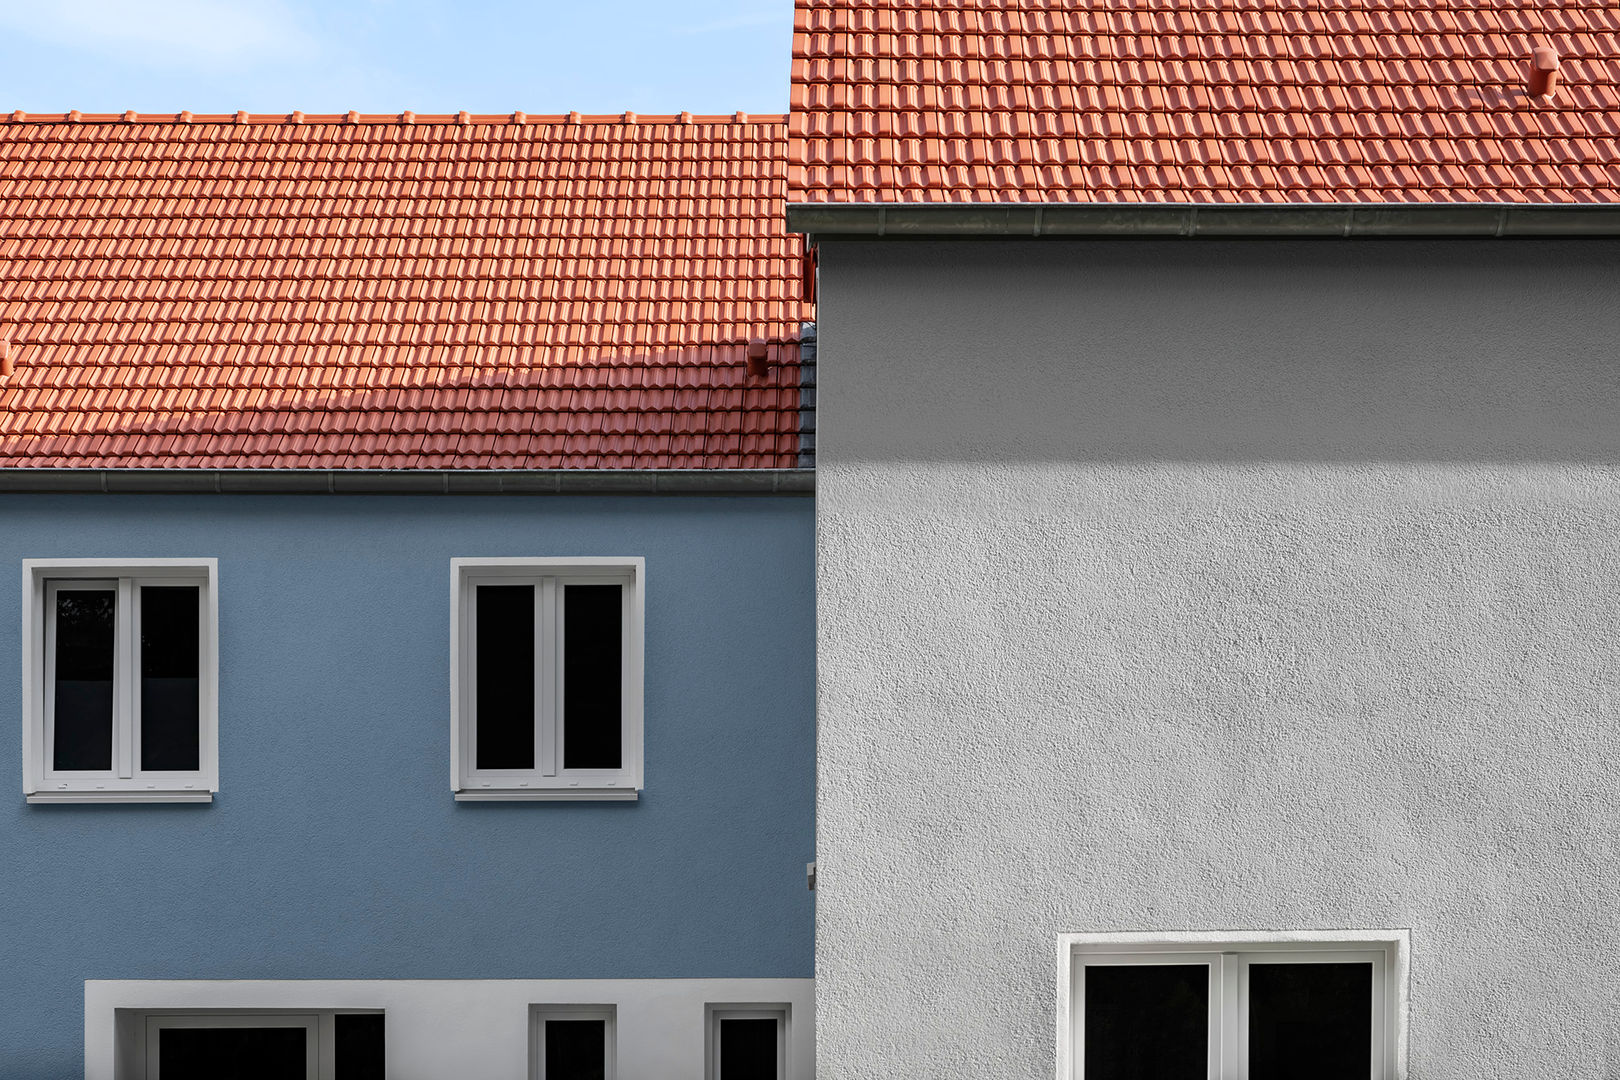 Spiel der Flächen Hilger Architekten Satteldach WDVS,Dachpfanne,Fenster,Fasche,Reihenhaus,Satteldach,Sanierung